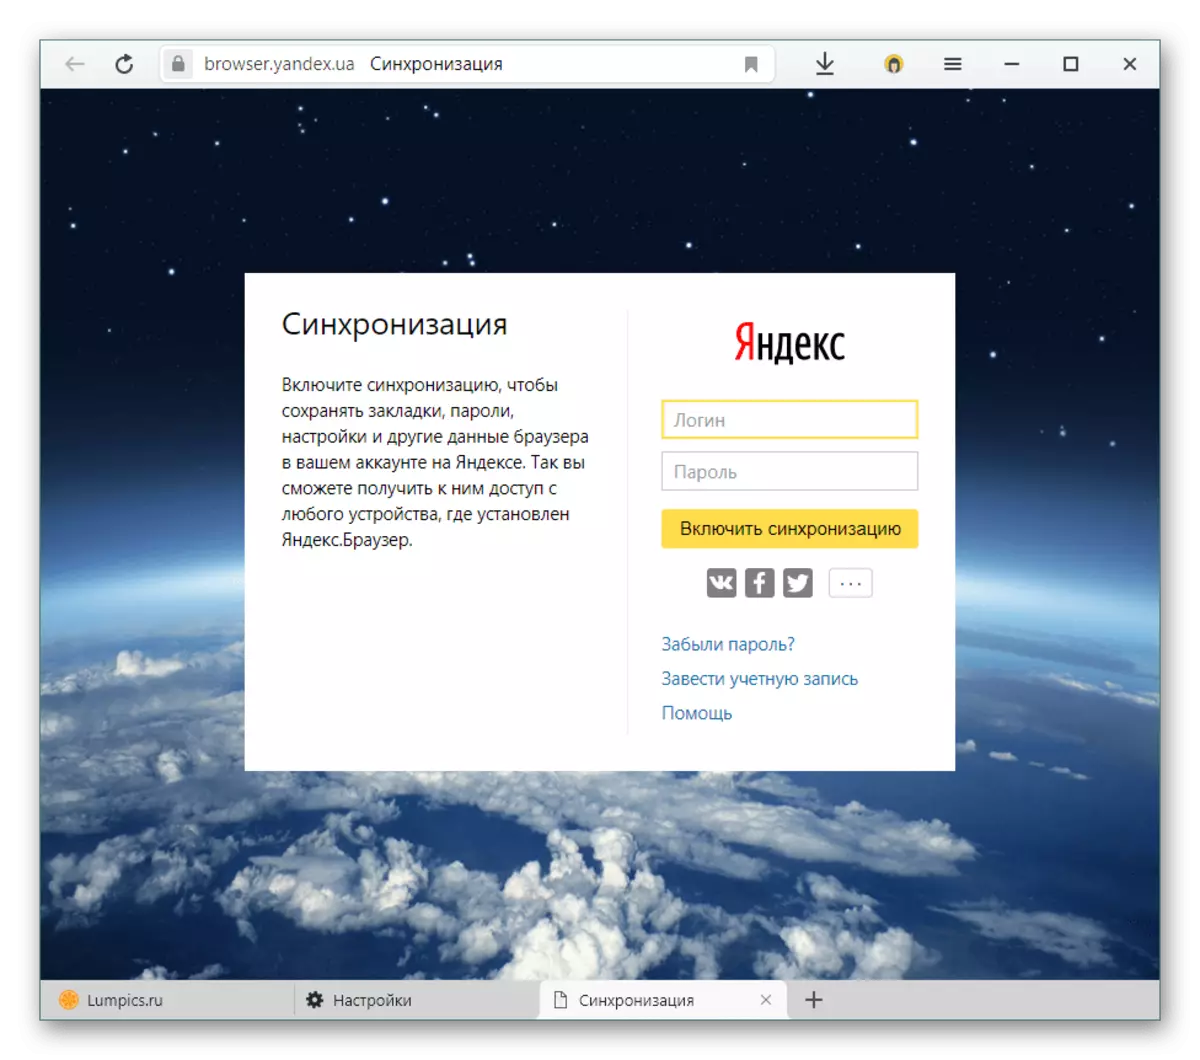 Chilolezo mu Akaunti Ya Yandex Connecronization mu Yandex.browser